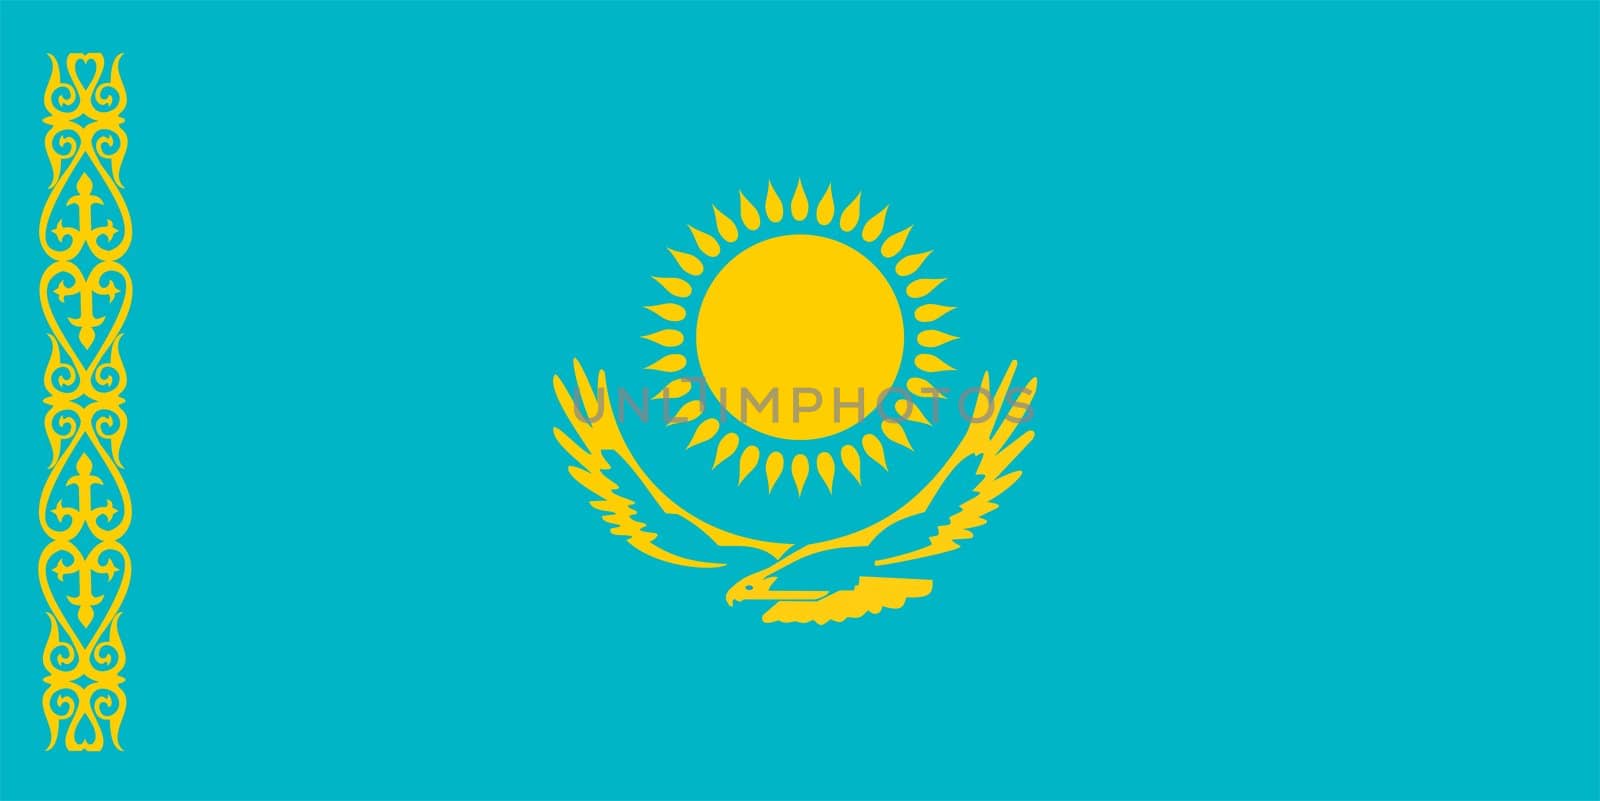 2D illustration of the flag of Kazakhstan